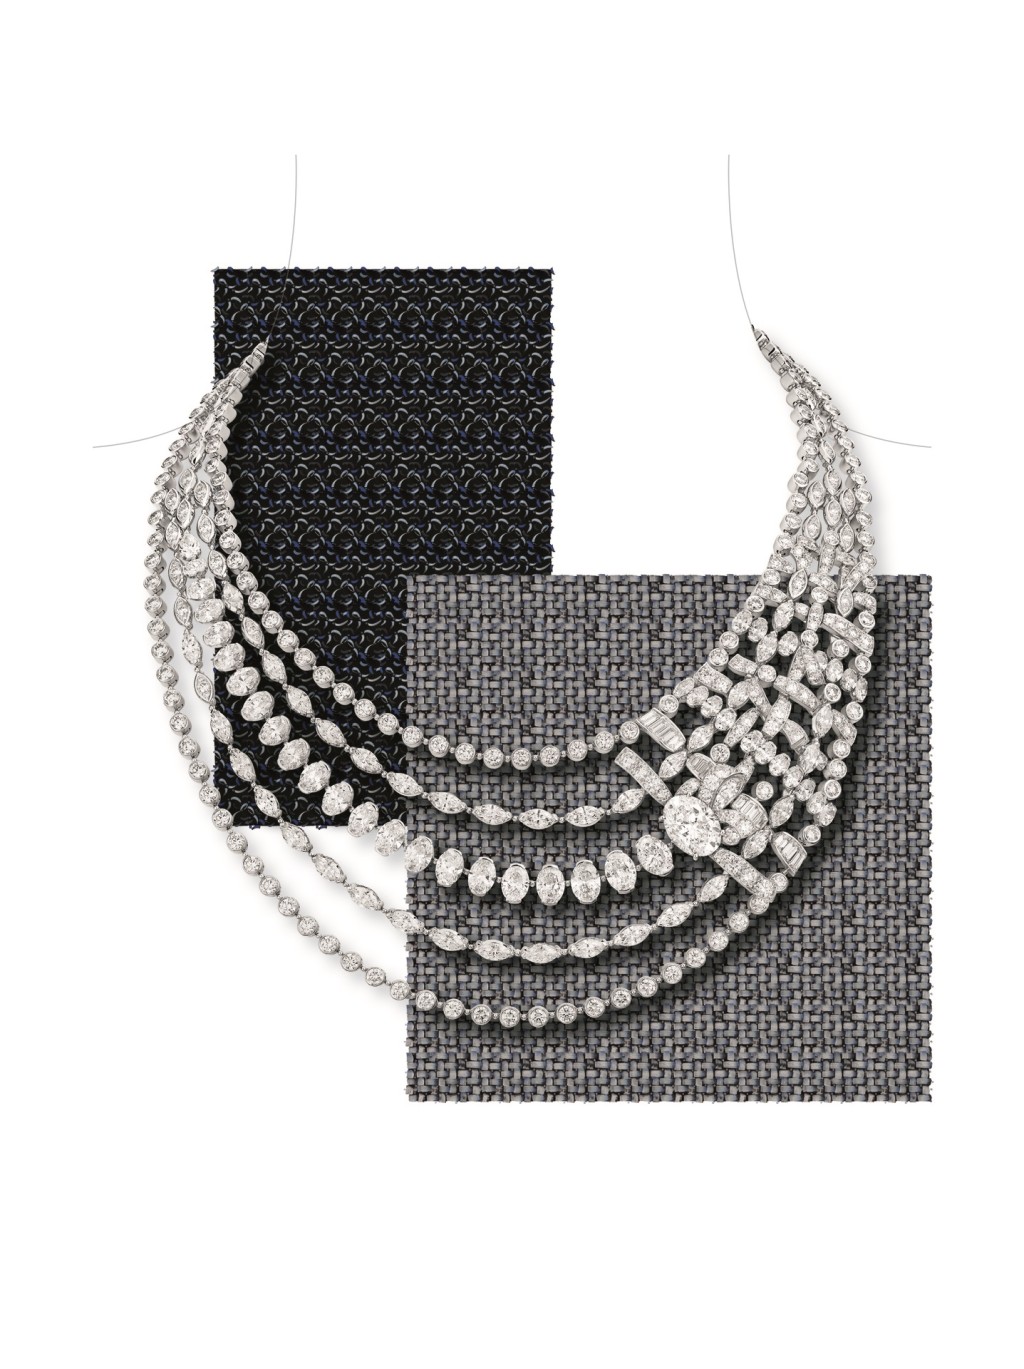 Tweed Mademoiselle白金及鑽石項鏈，當中單顆橢圓形切割鑽石重約5.01卡。